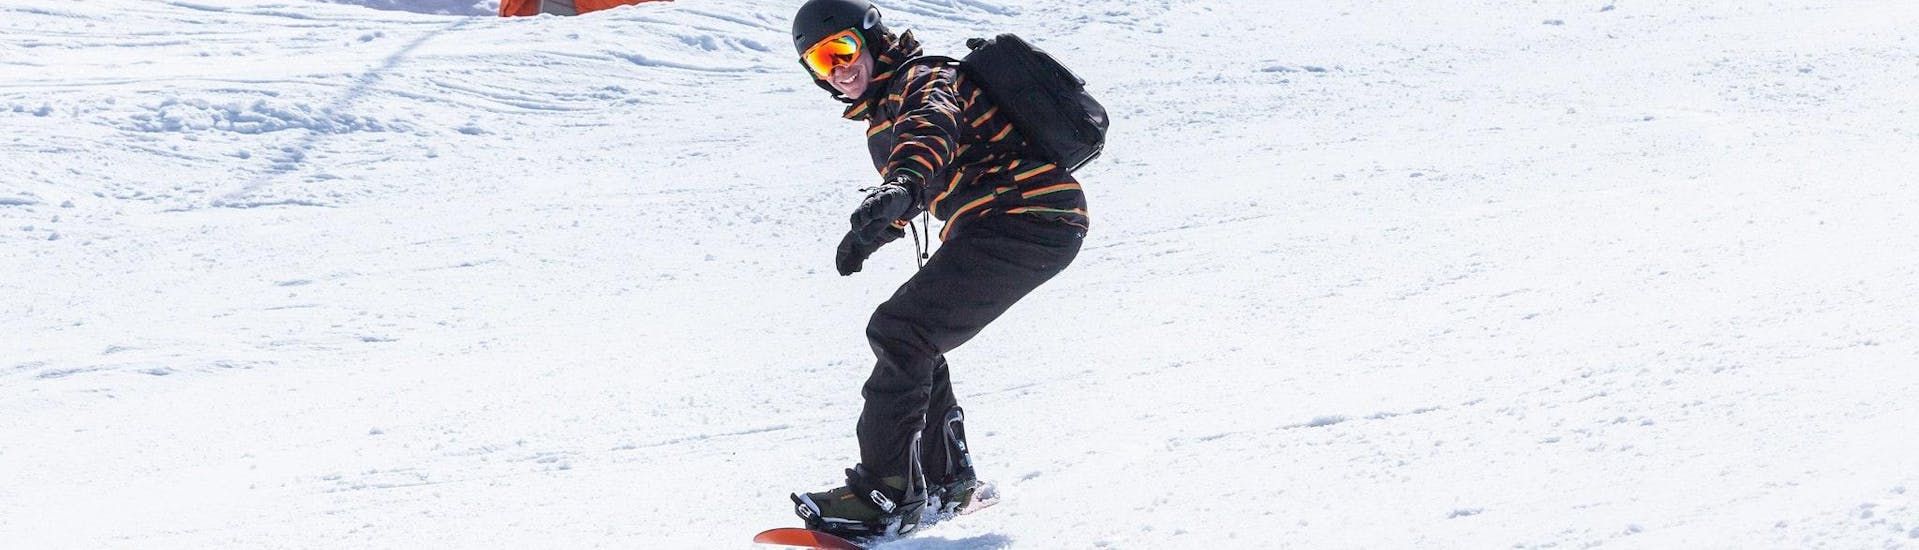 Privater Snowboardkurs ab 5 Jahren für alle Levels.